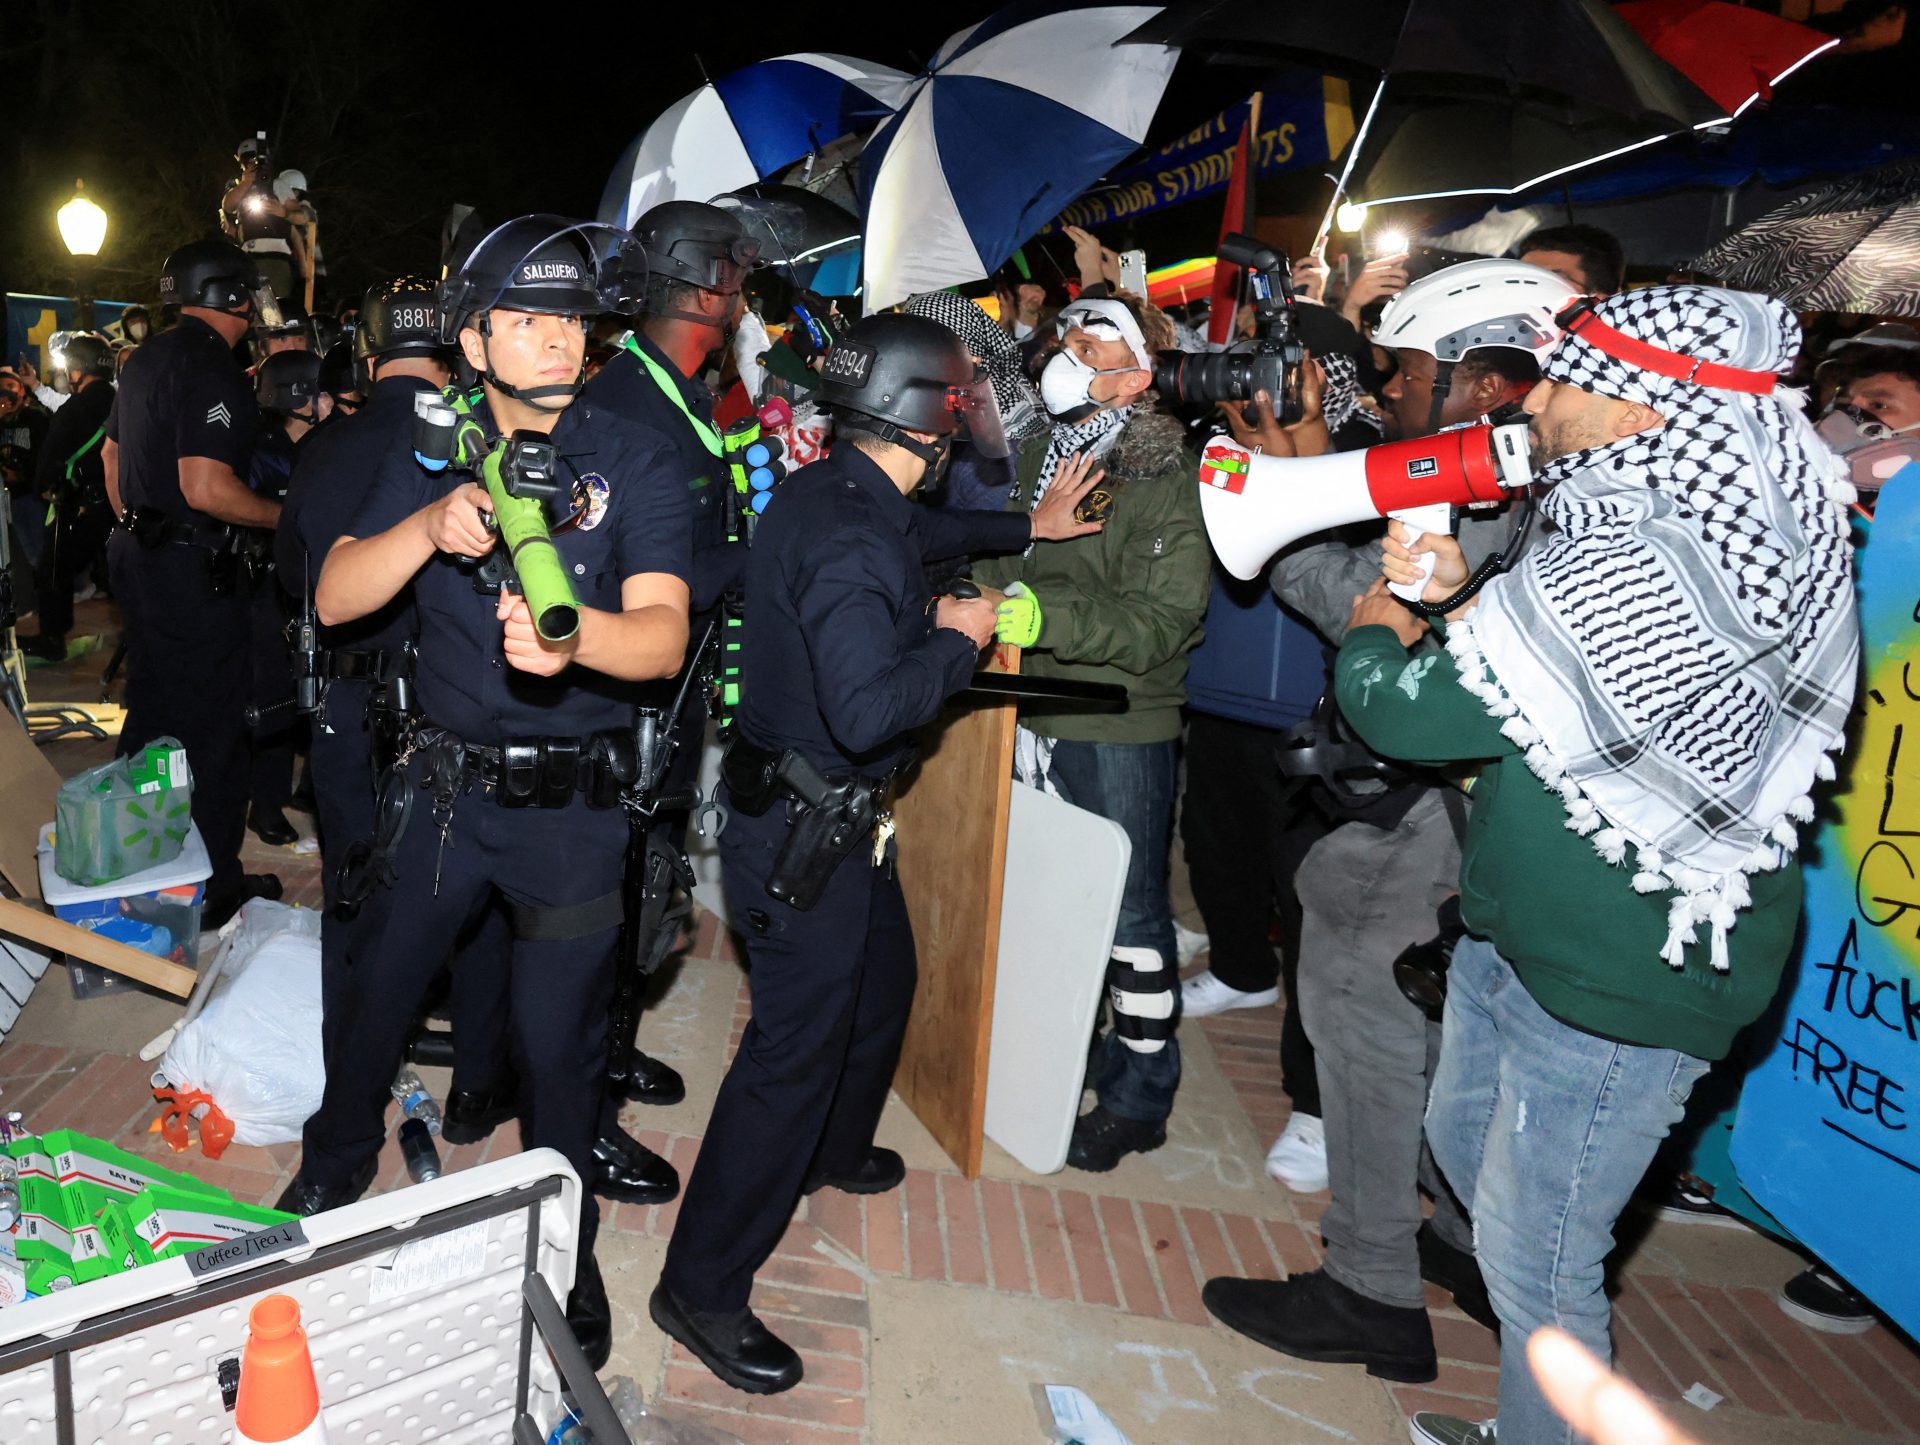 Délogement et arrestations d'étudiants UCLA dans les manifs US - Infos